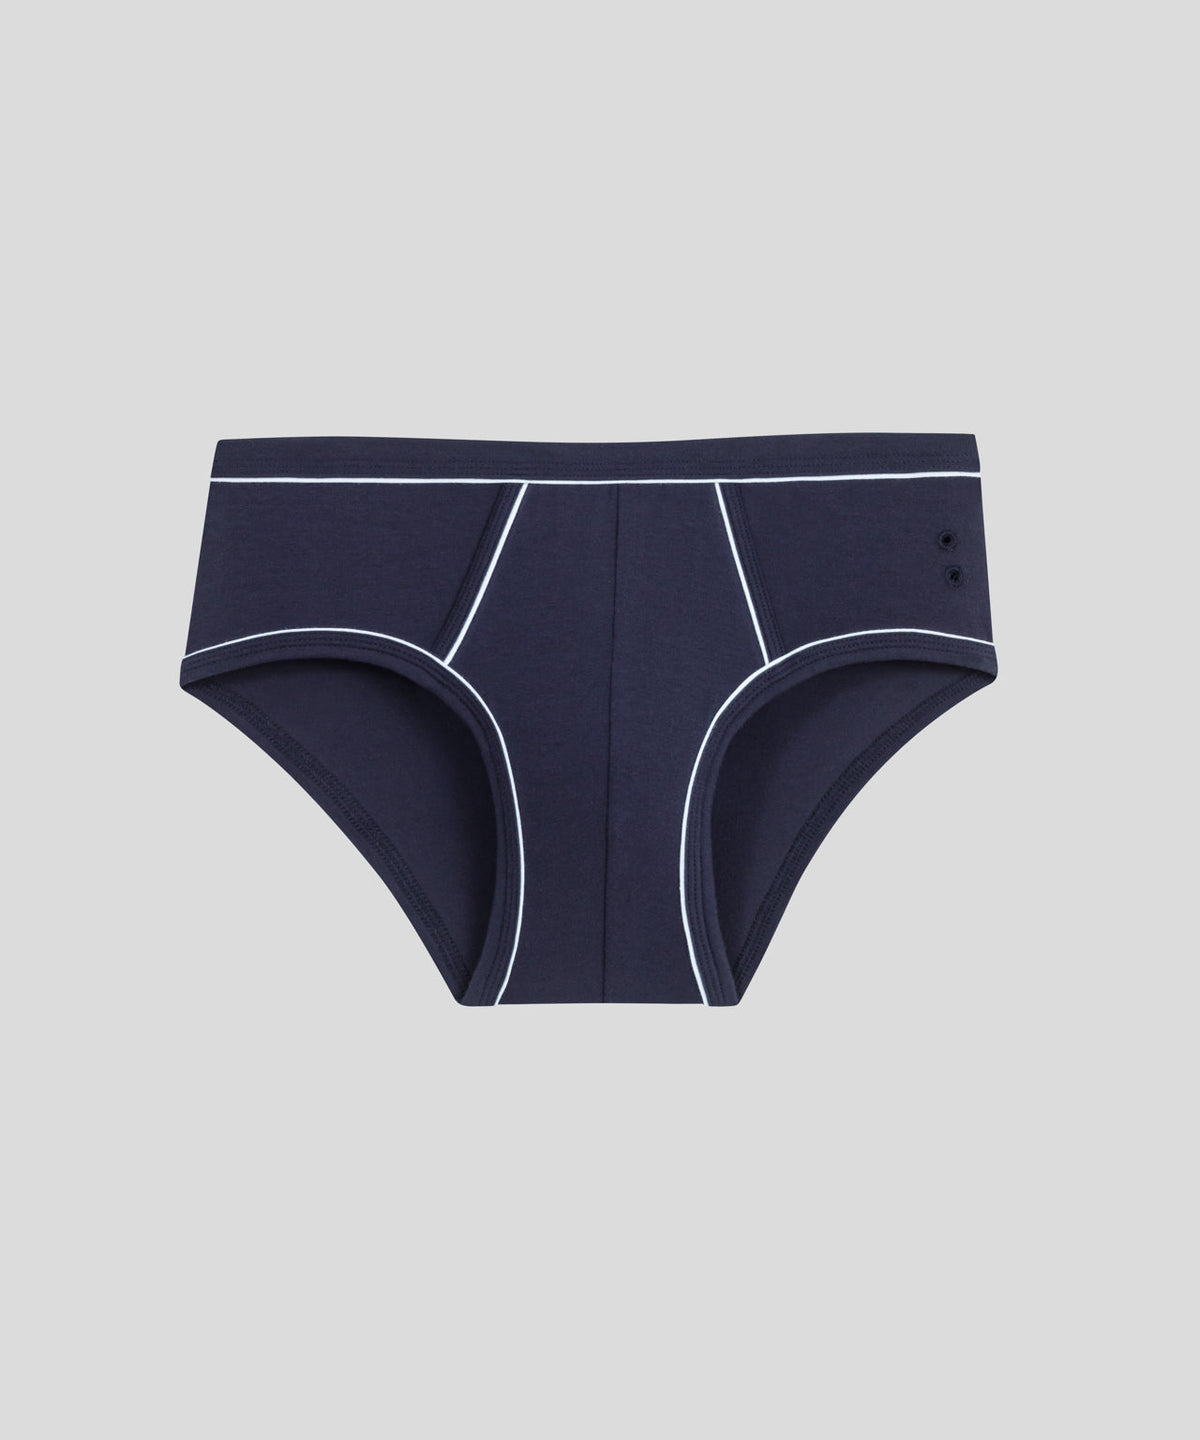 RAVER Brief by PUMP! Underwear  Men's Designer Underwear with Discreet  Shipping from Clonezone UK